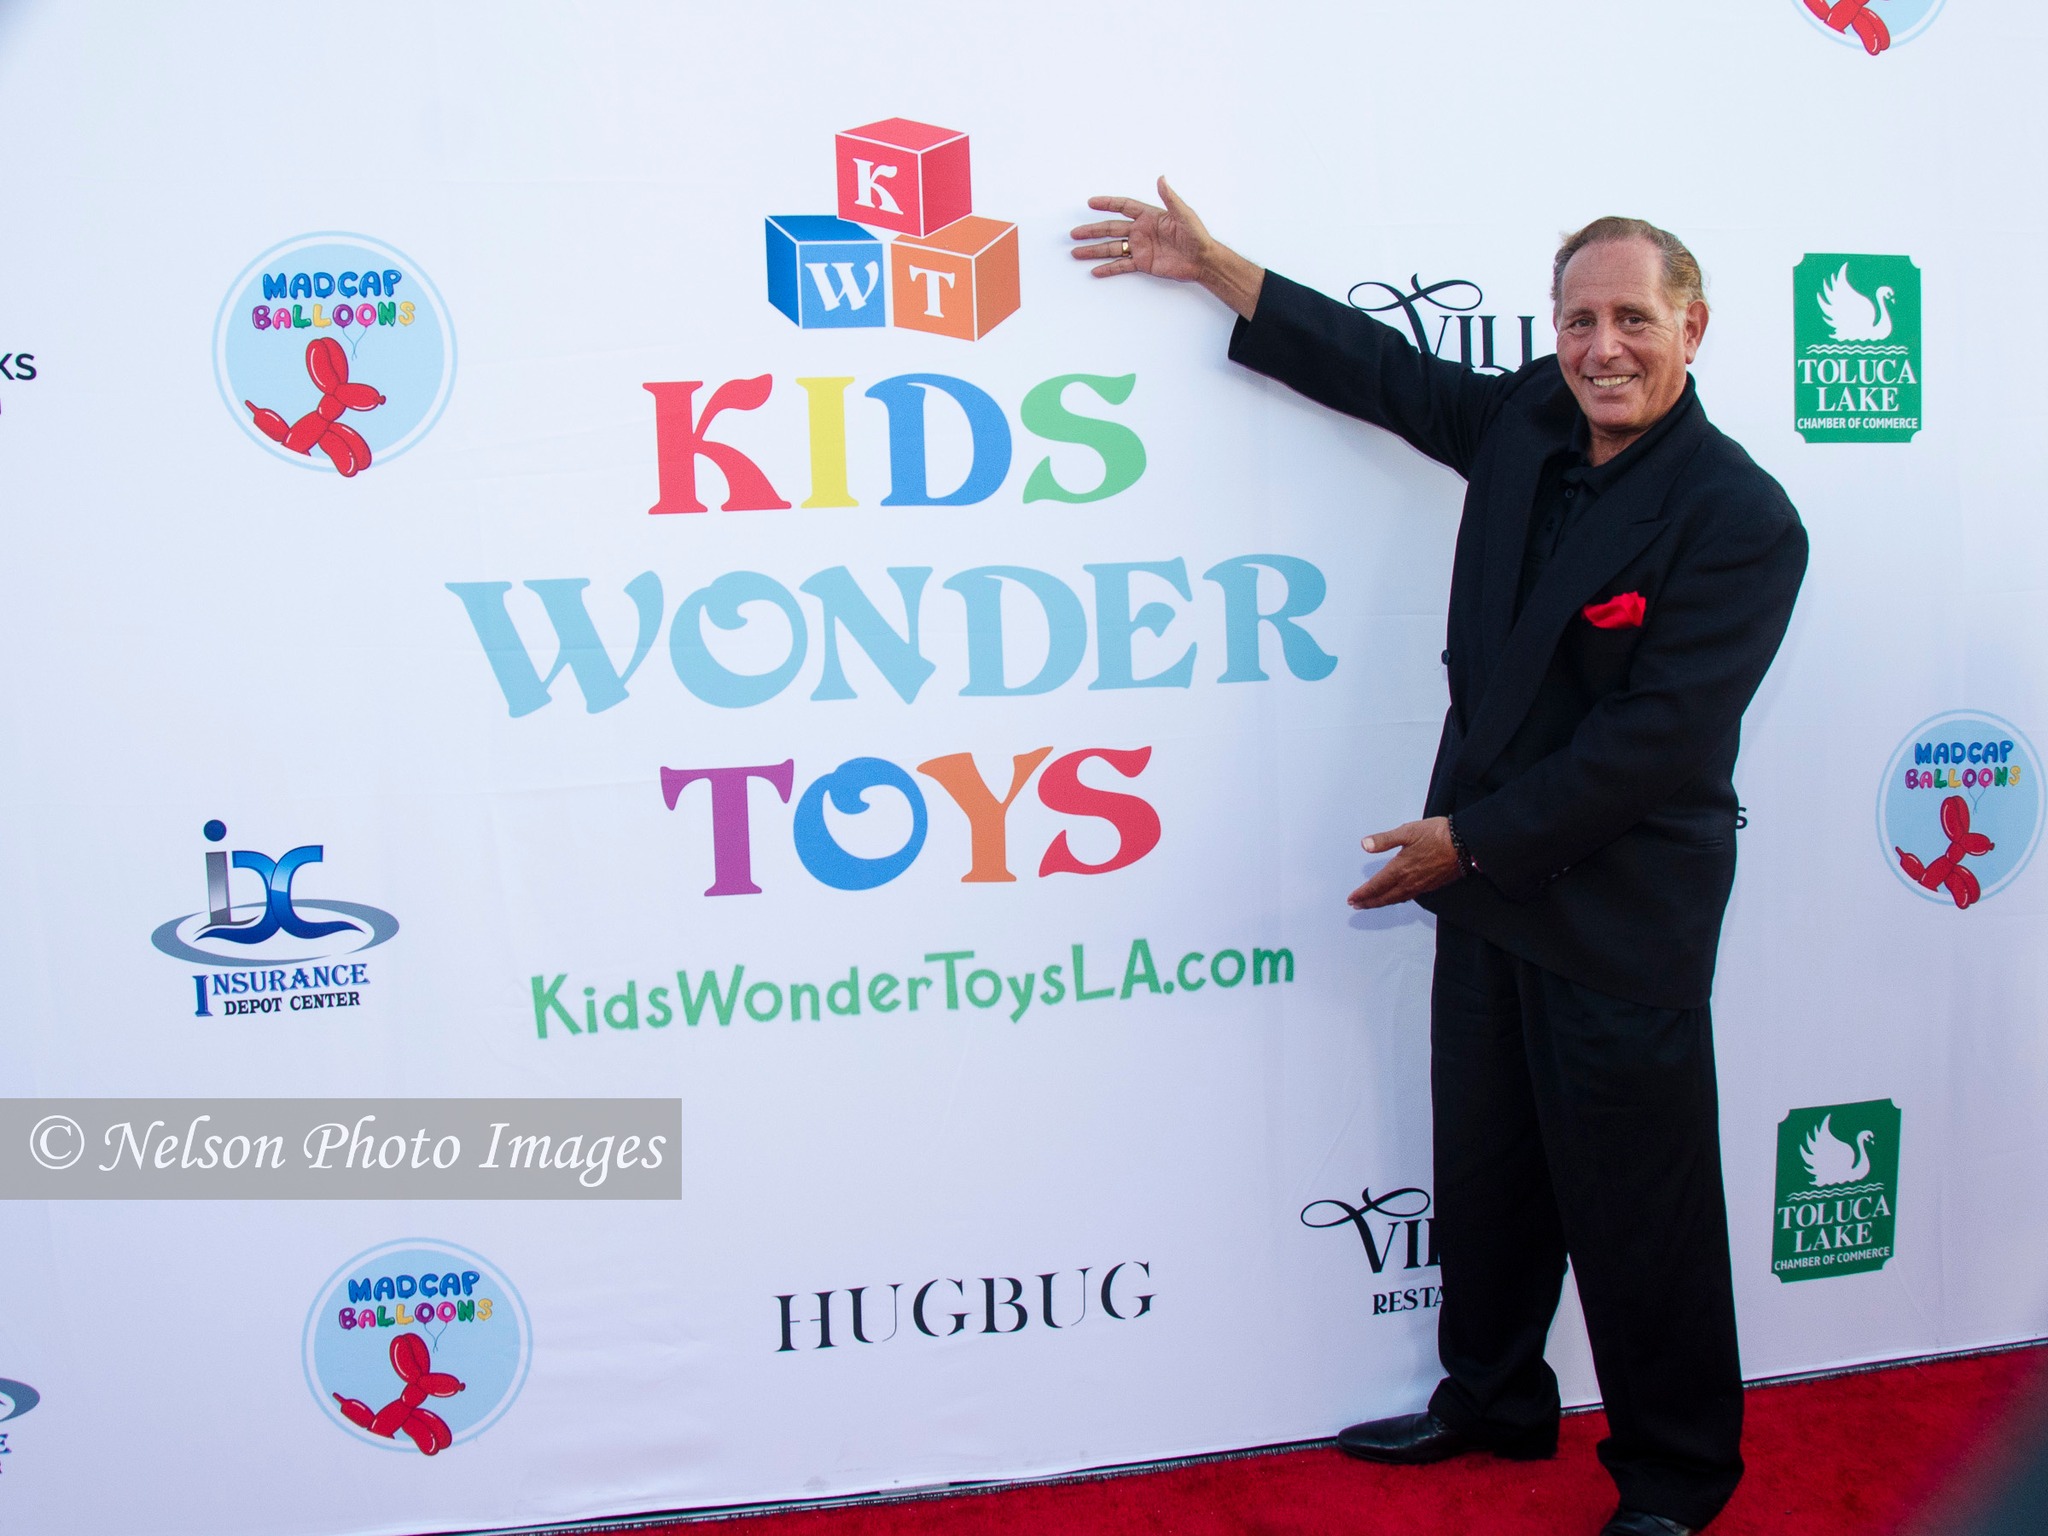 Kids-wonder-toys-grand opening_112